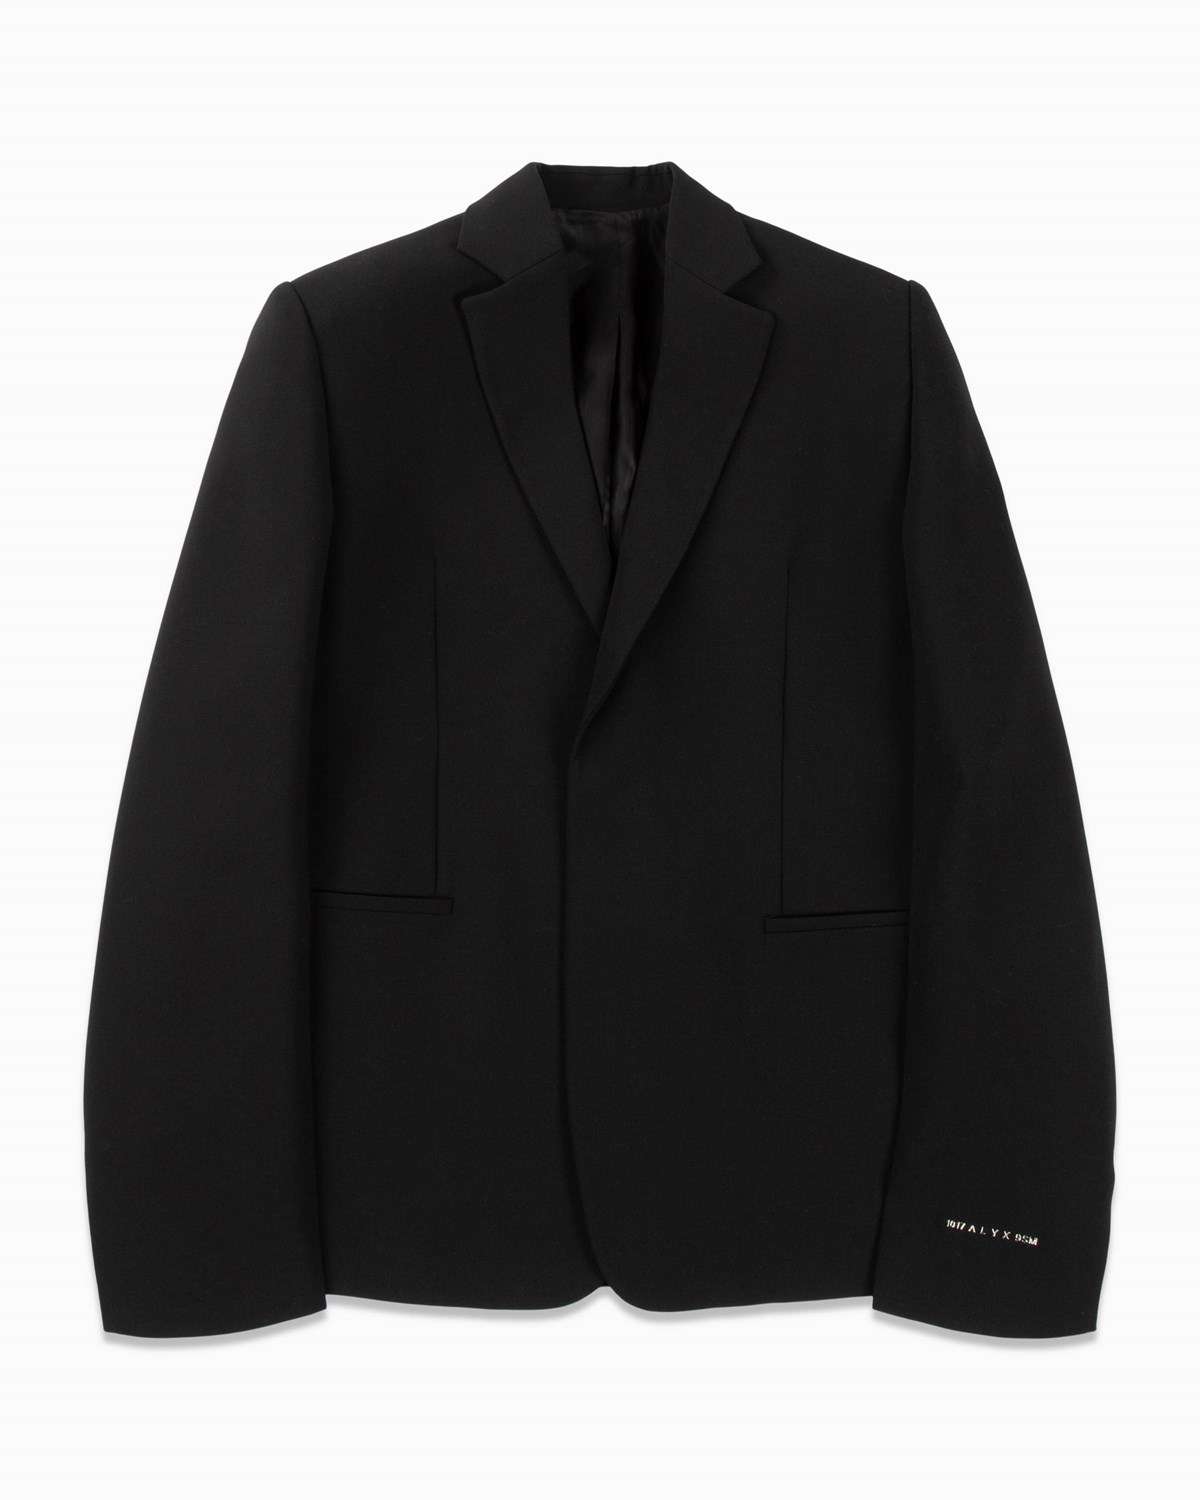 Classic Wool Blazer 1017 ALYX 9SM Outerwear Jackets Black